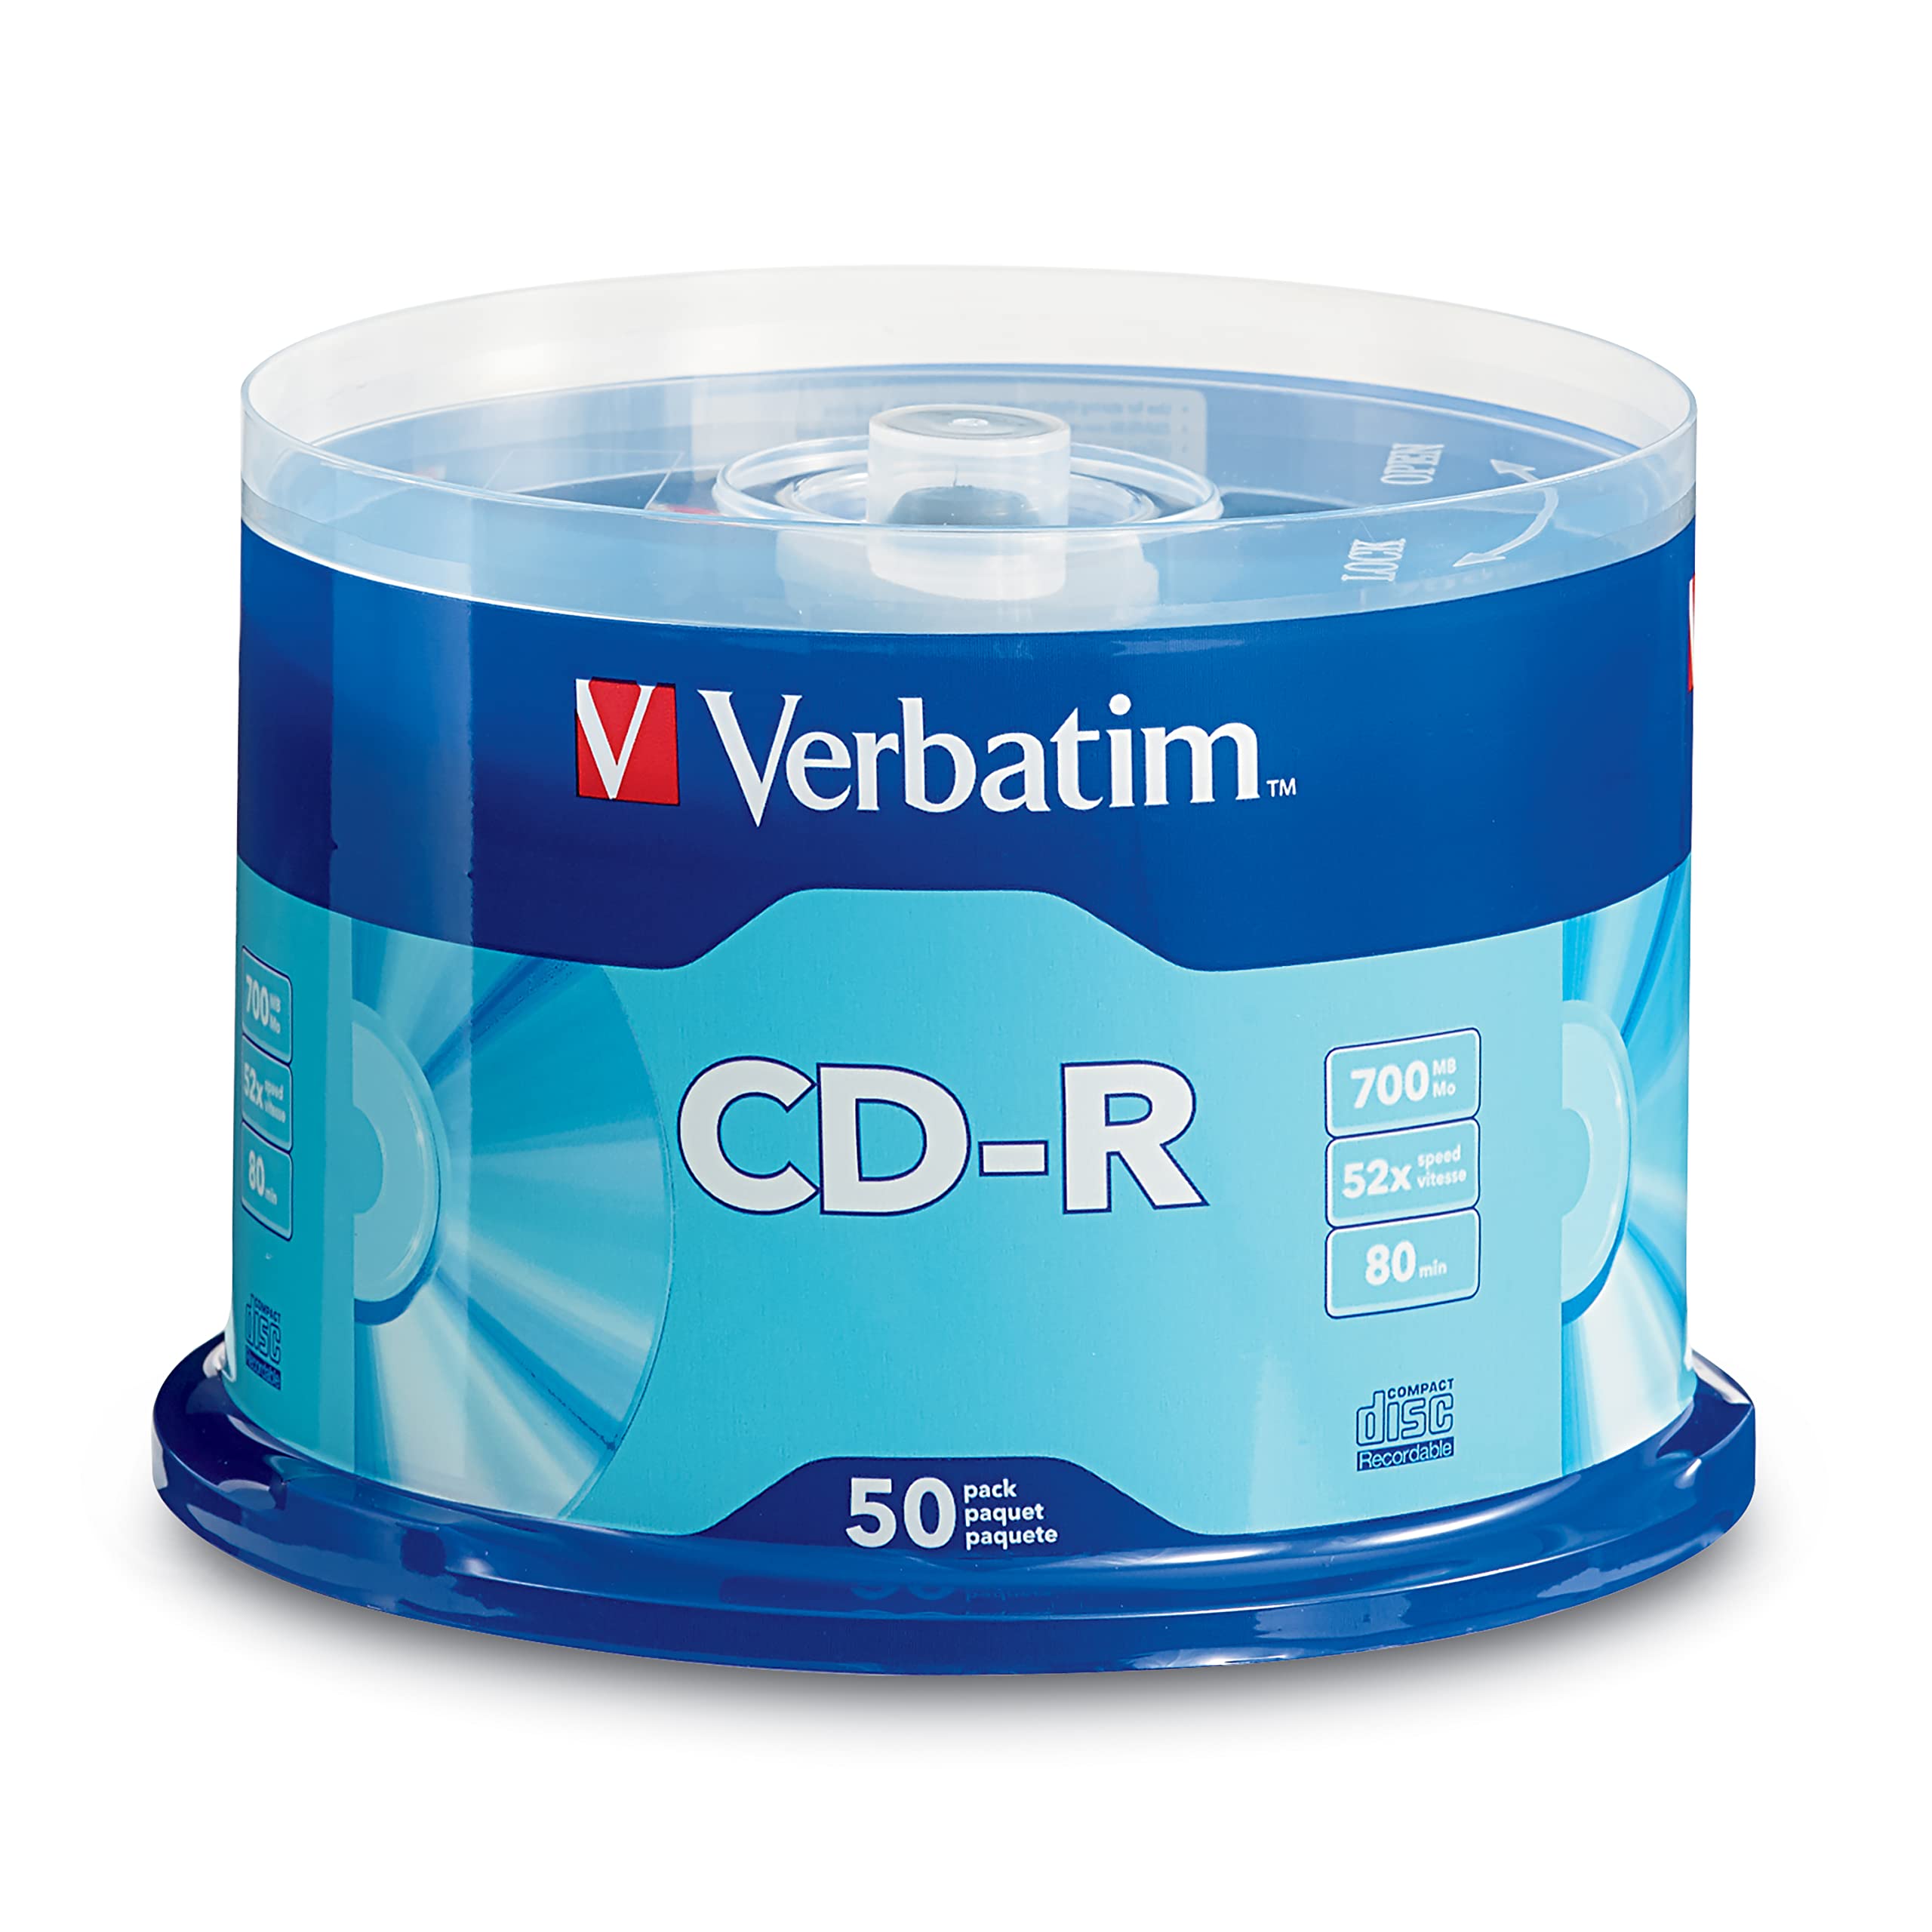 Disco Verbatim CD-R 52x 700MB torre 10 p Campana con 10 piezas. Capacidad de almacenamiento de 700 MB/80 minutos. compatible con unidades de cd de hasta 52x de velocidad. Grabación de CD en menos de 2 minutos. Discos para única grabación.                                                           zas                                      - VERBATIM